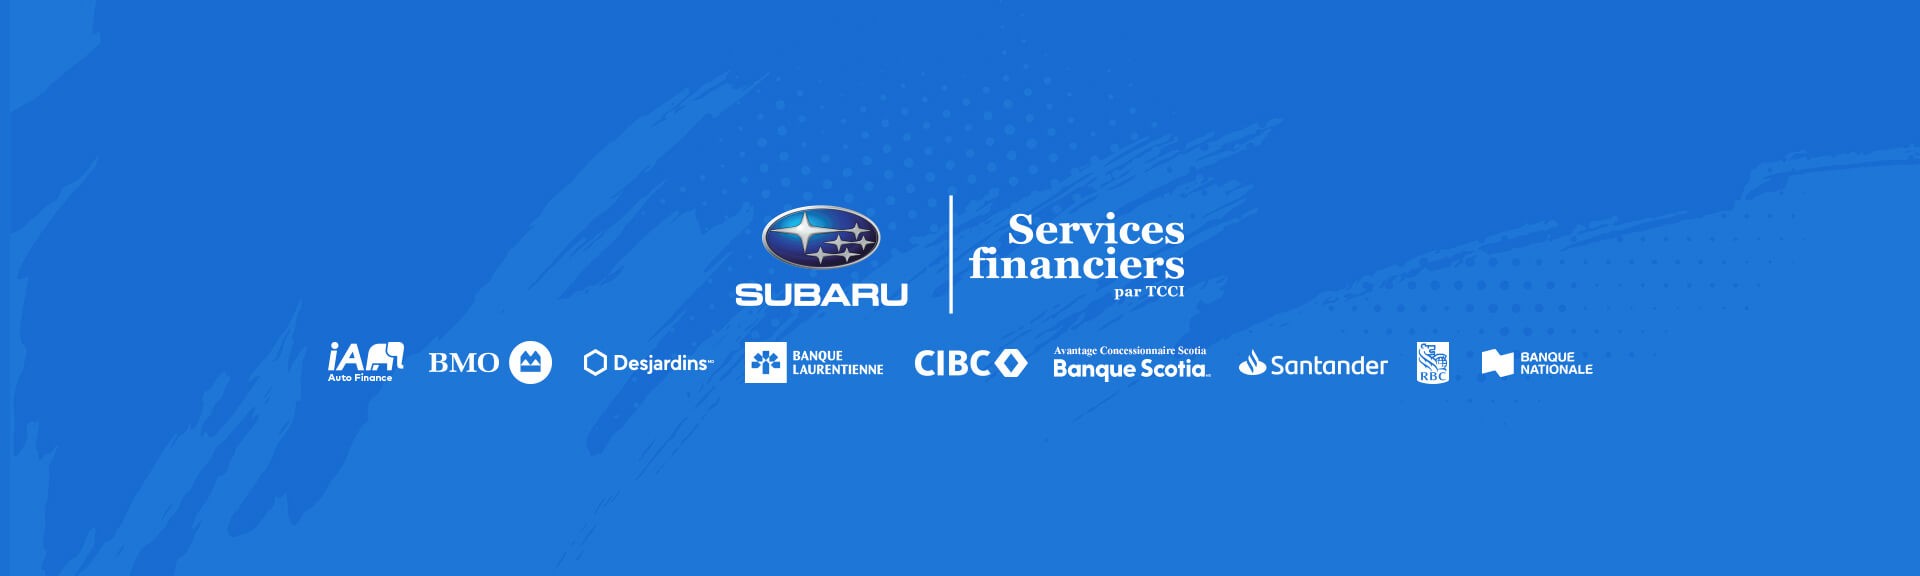 Subaru services financiers